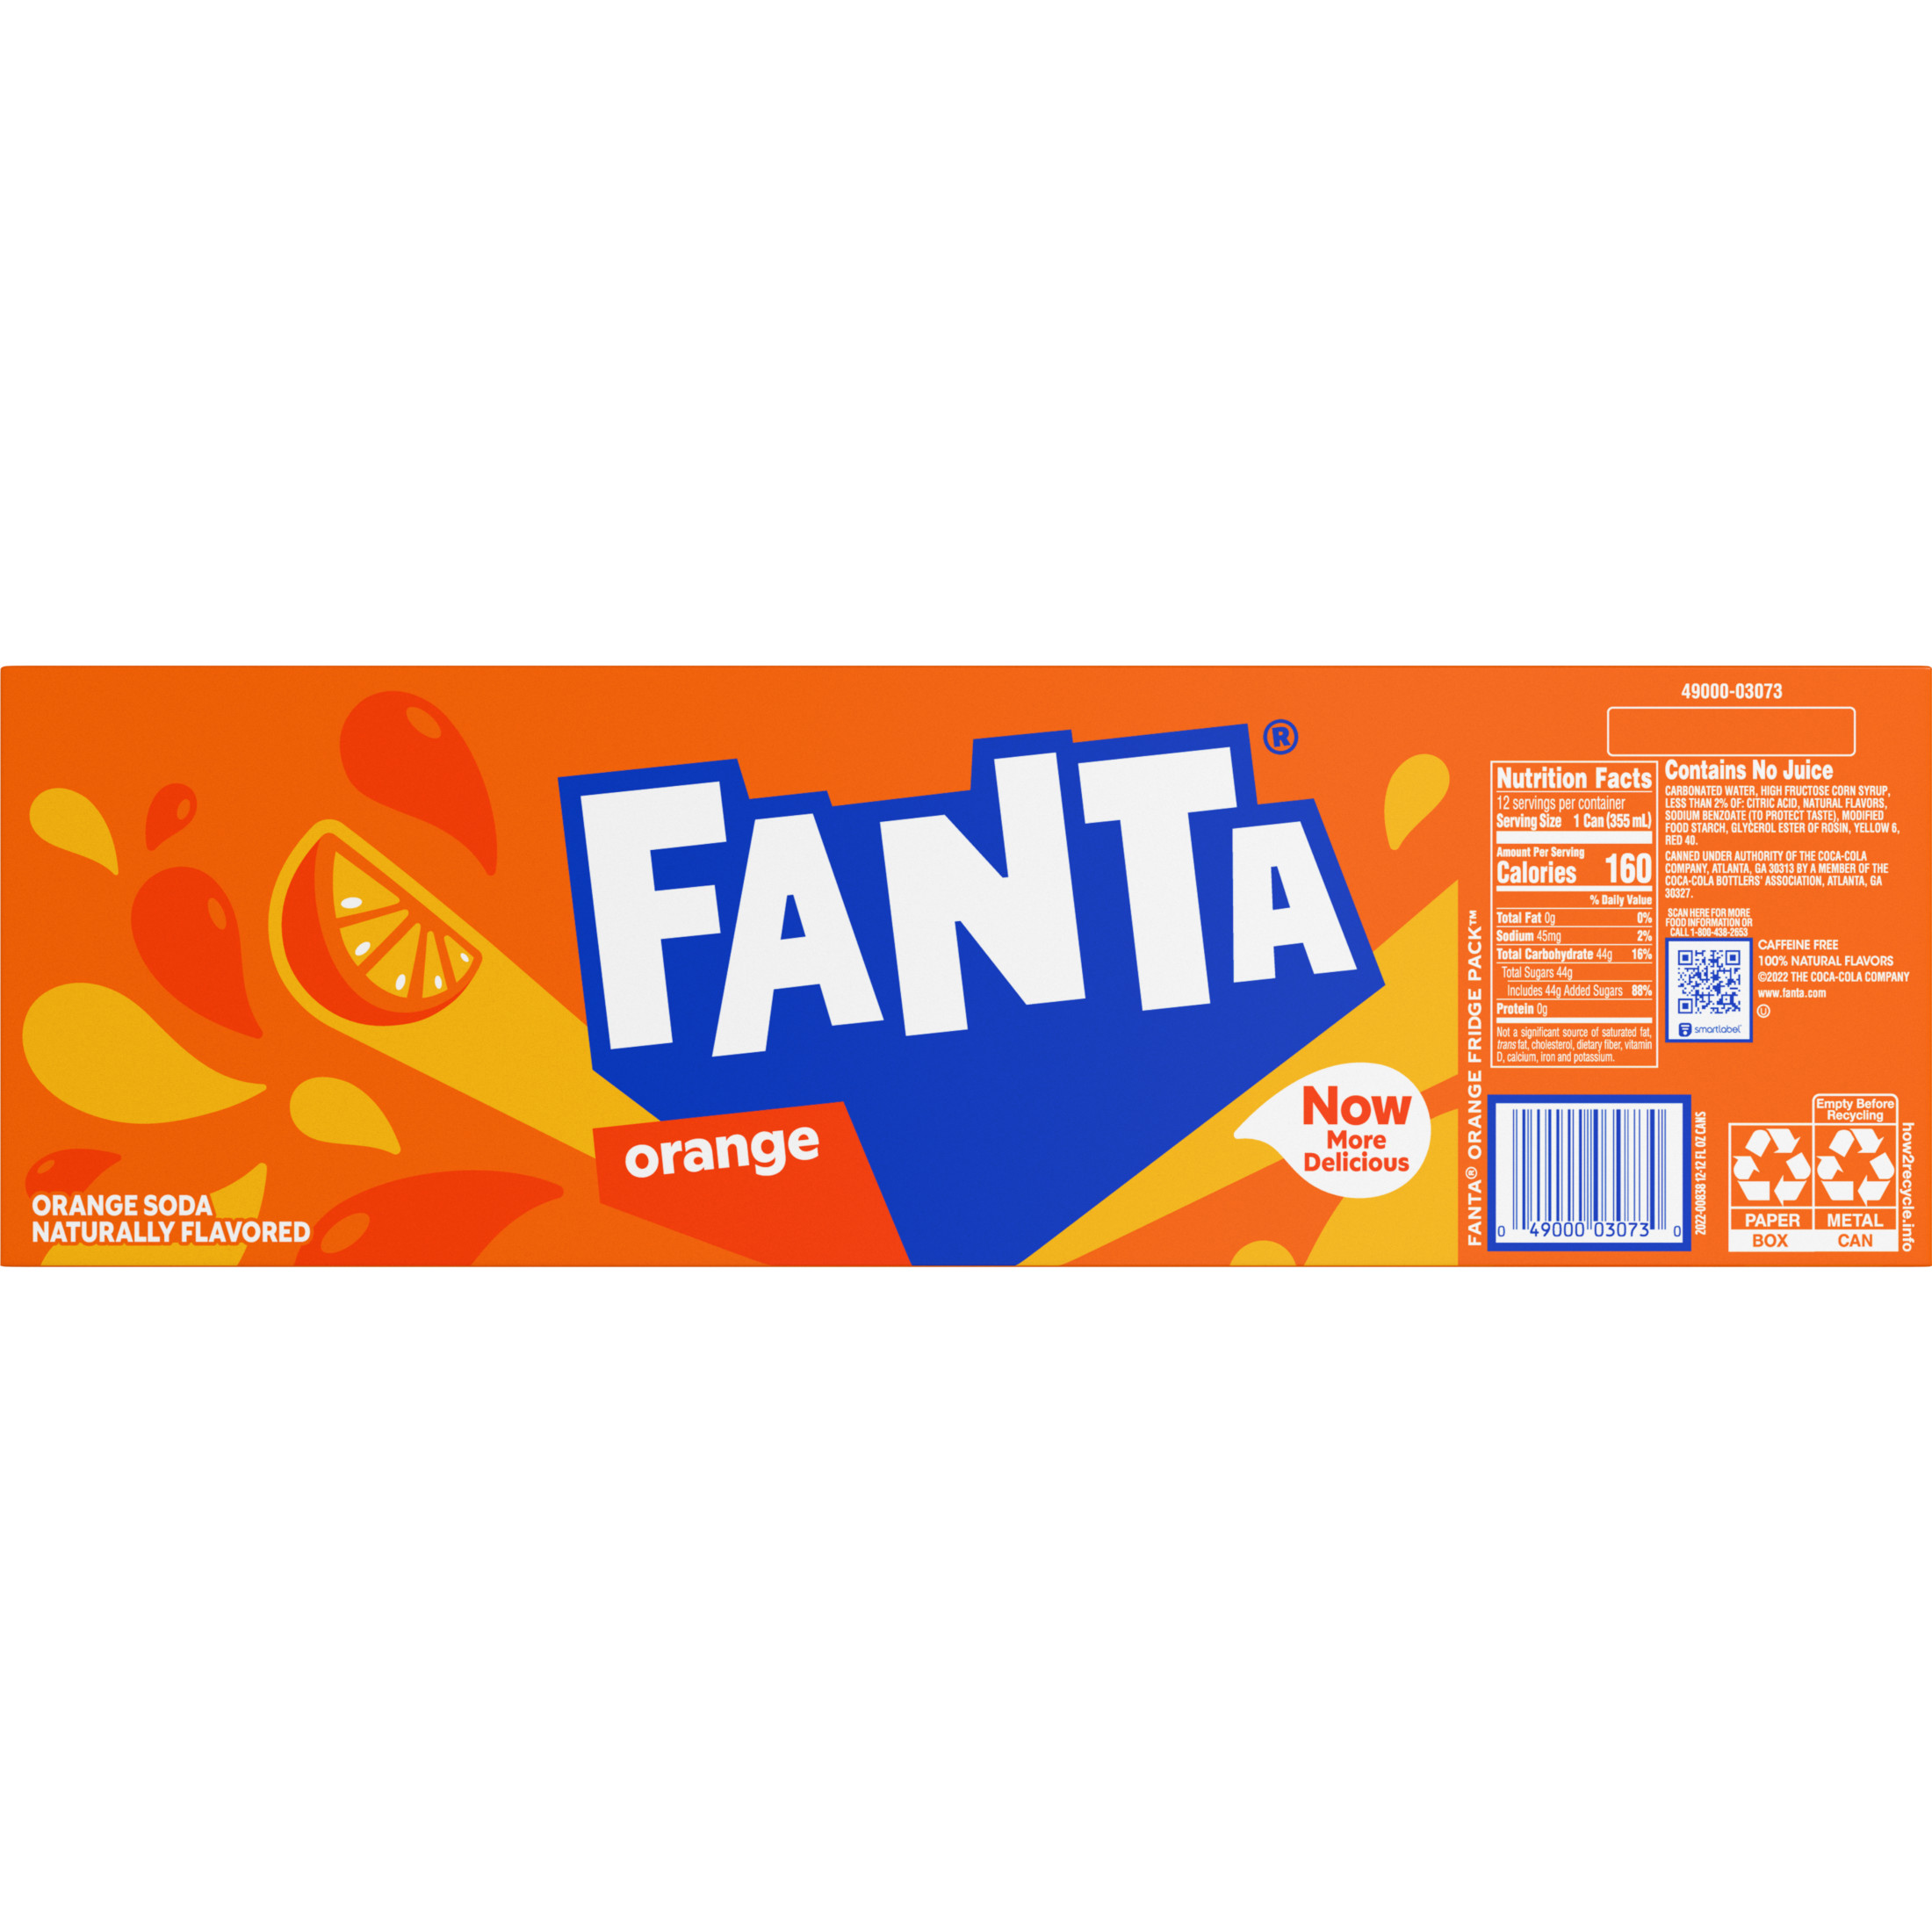 Fanta Orange Fruit Soda Pop, 12 fl oz, 12 Pack Cans - image 5 of 8